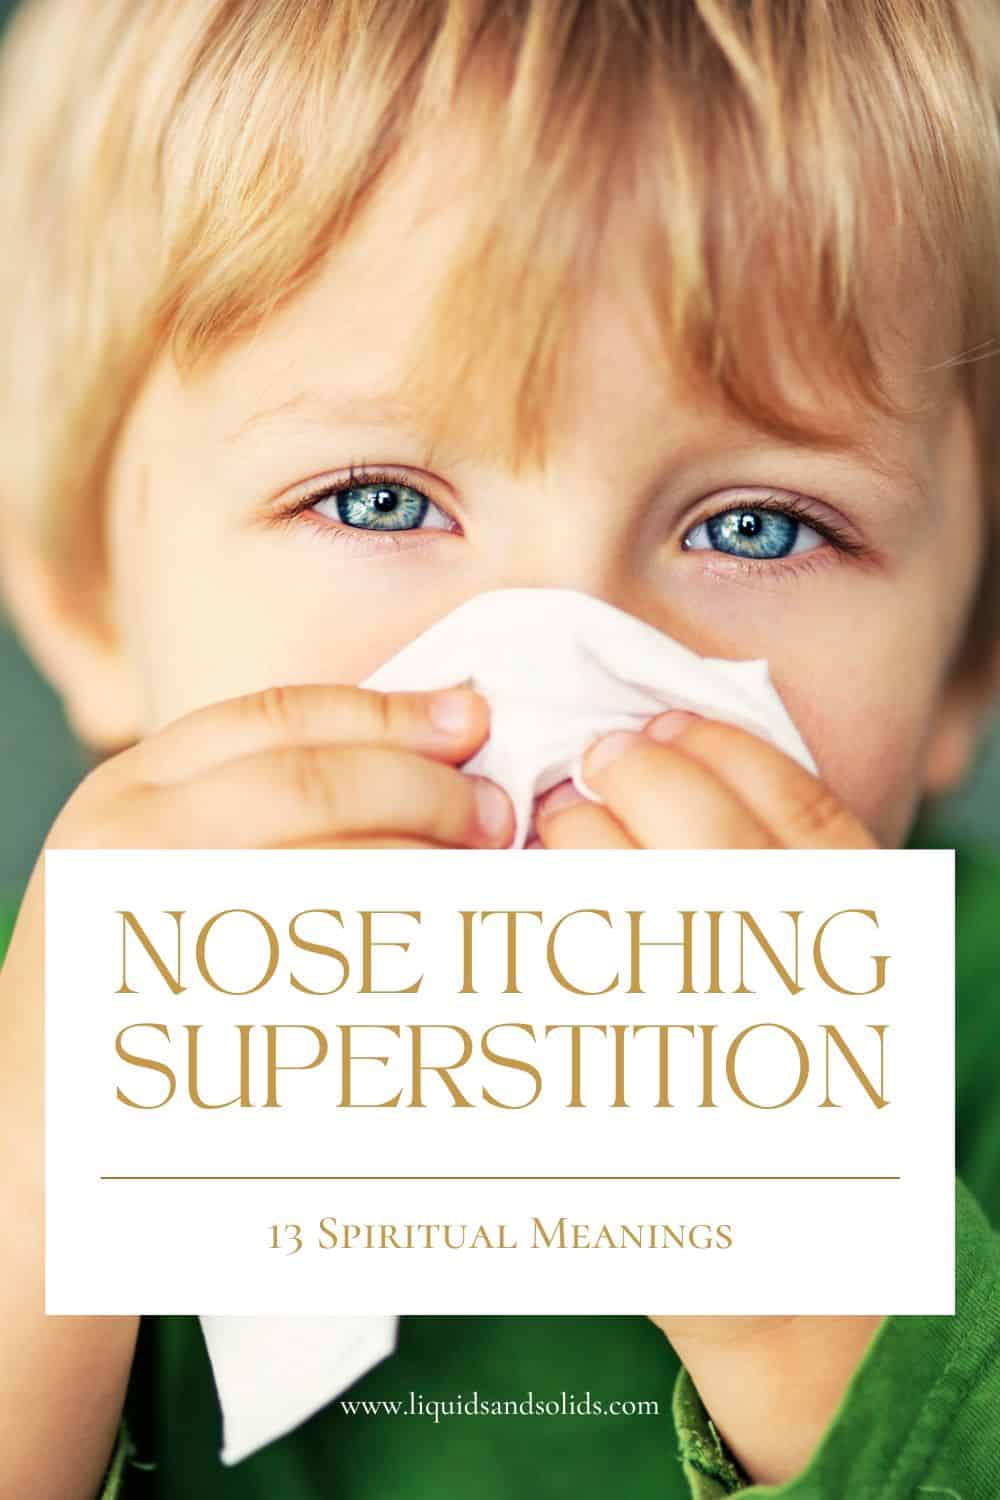  Superstition sur les démangeaisons du nez : Que signifie une démangeaison du nez ? (13 significations spirituelles)